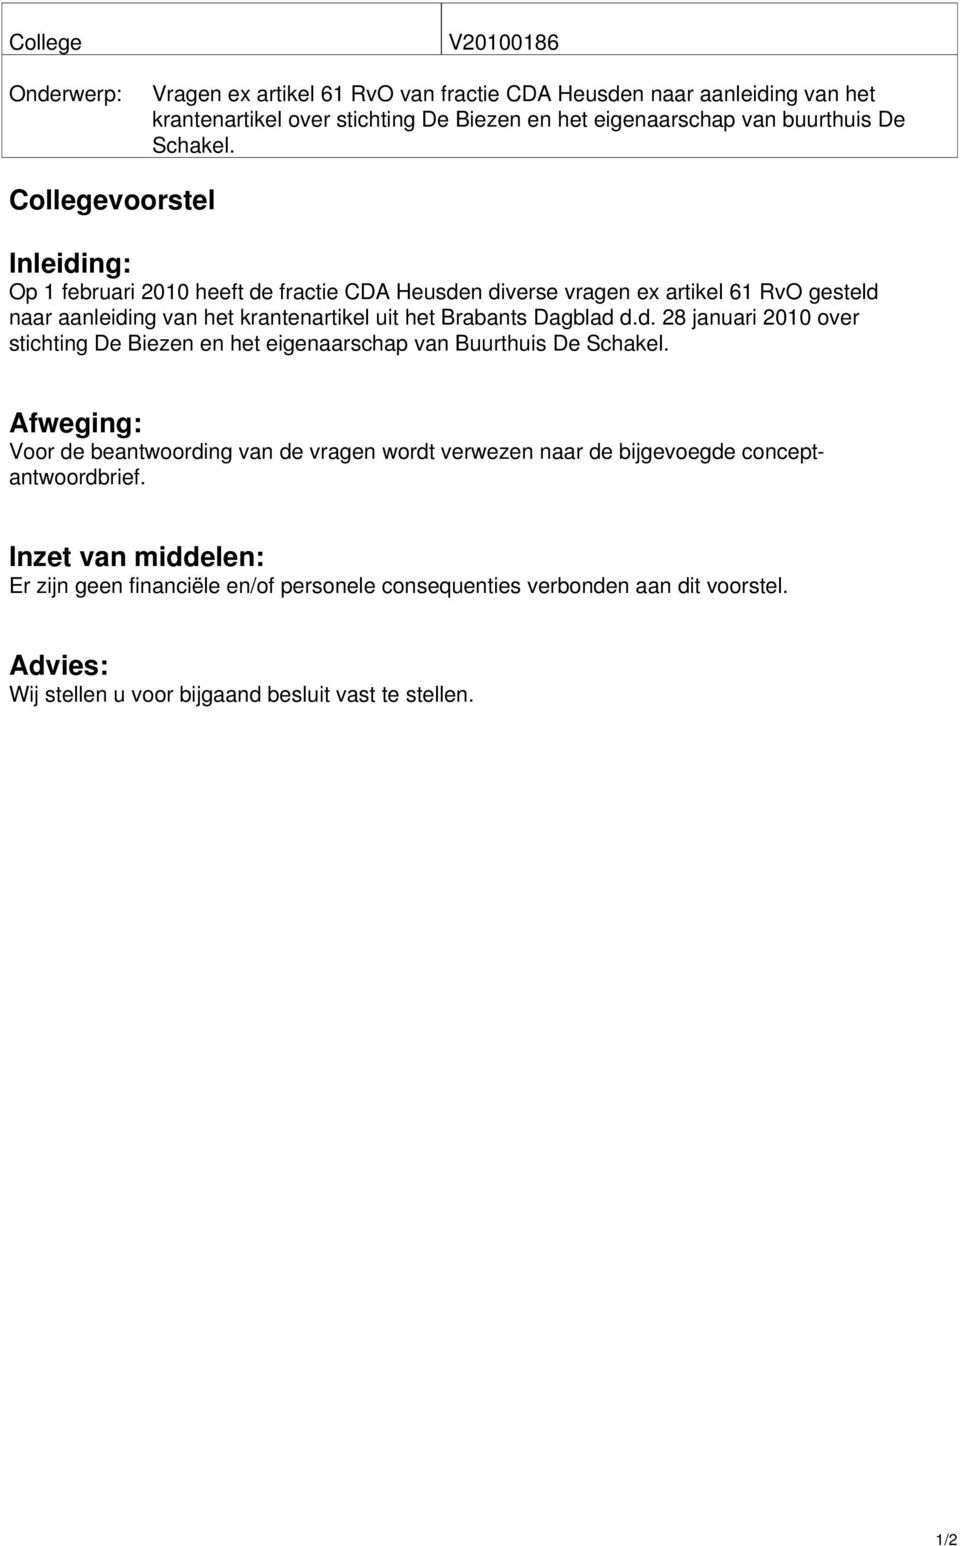 Collegevoorstel Inleiding: Op 1 februari 2010 heeft de fractie CDA Heusden diverse vragen ex artikel 61 RvO gesteld naar aanleiding van het krantenartikel uit het Brabants Dagblad d.